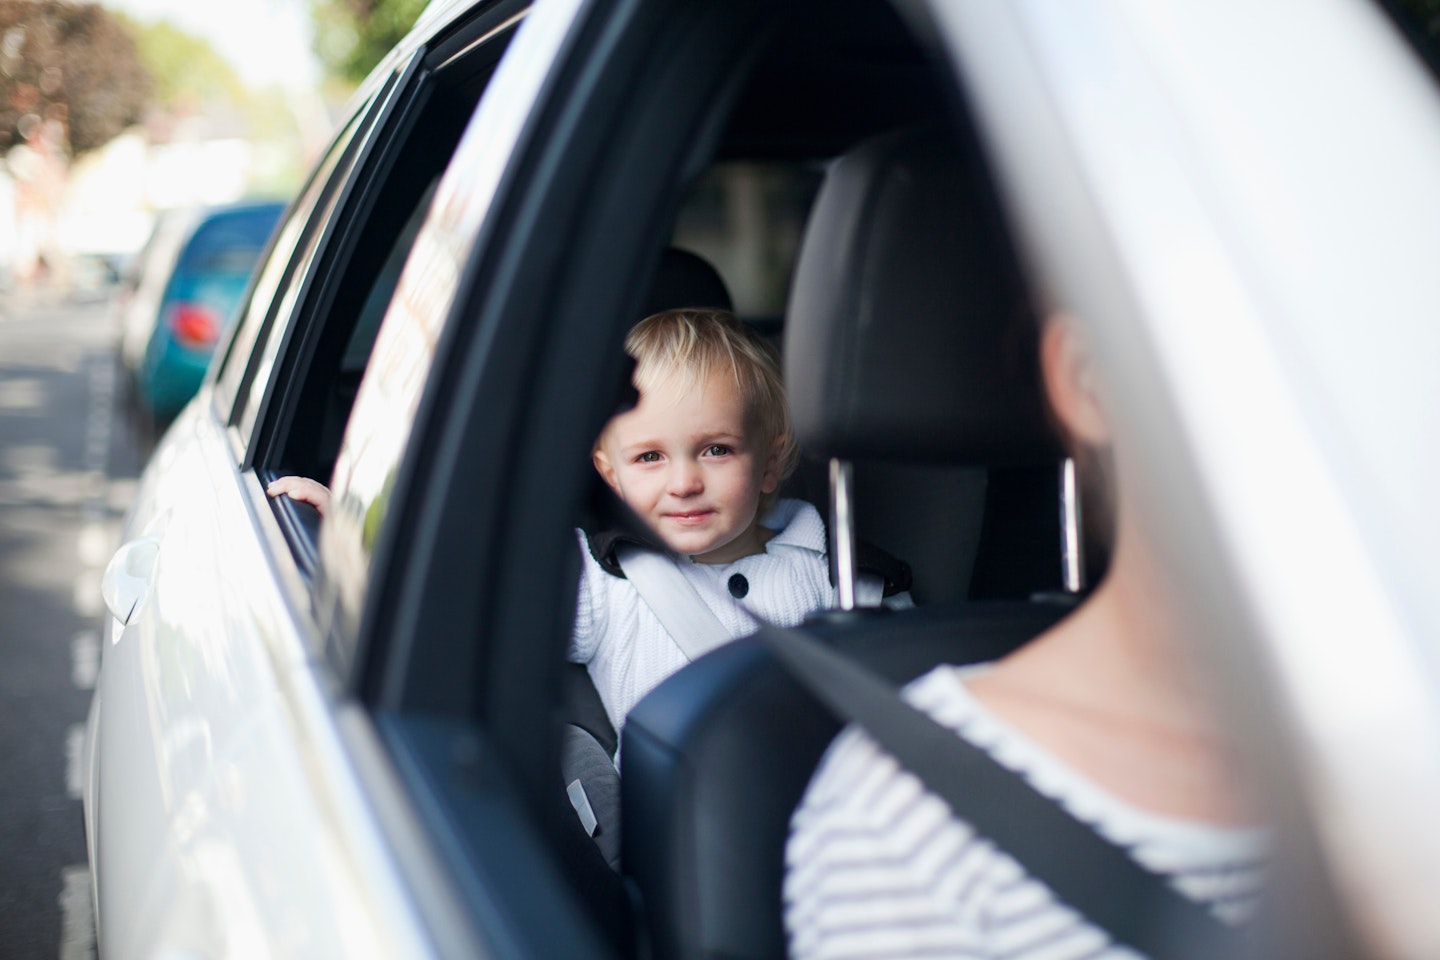 Child in a car